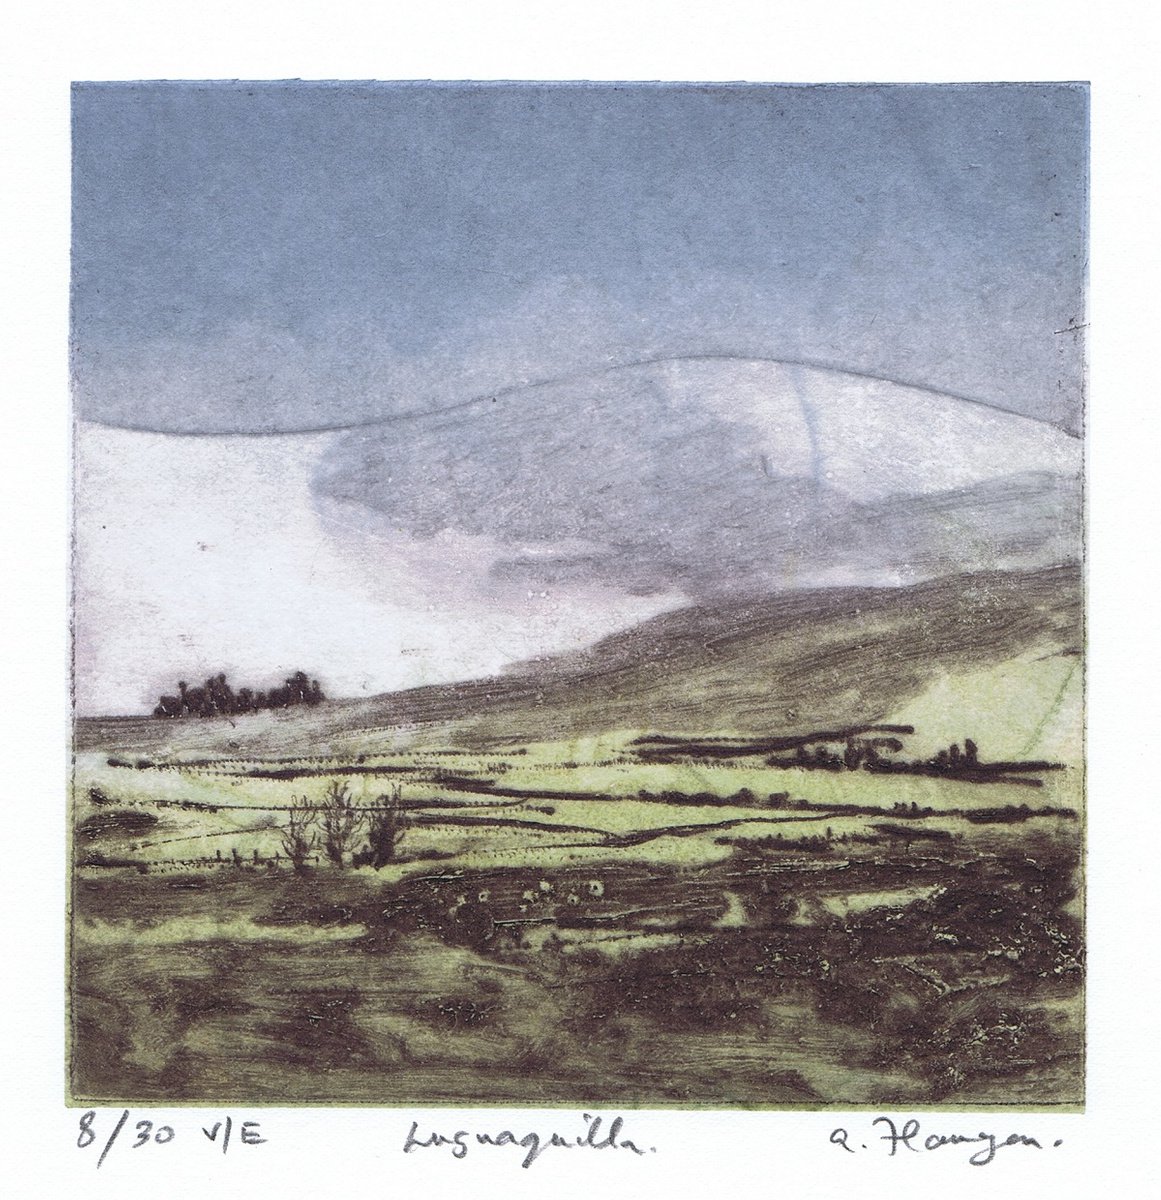 Lugnaquilla - Ireland by Aidan Flanagan Irish Landscapes